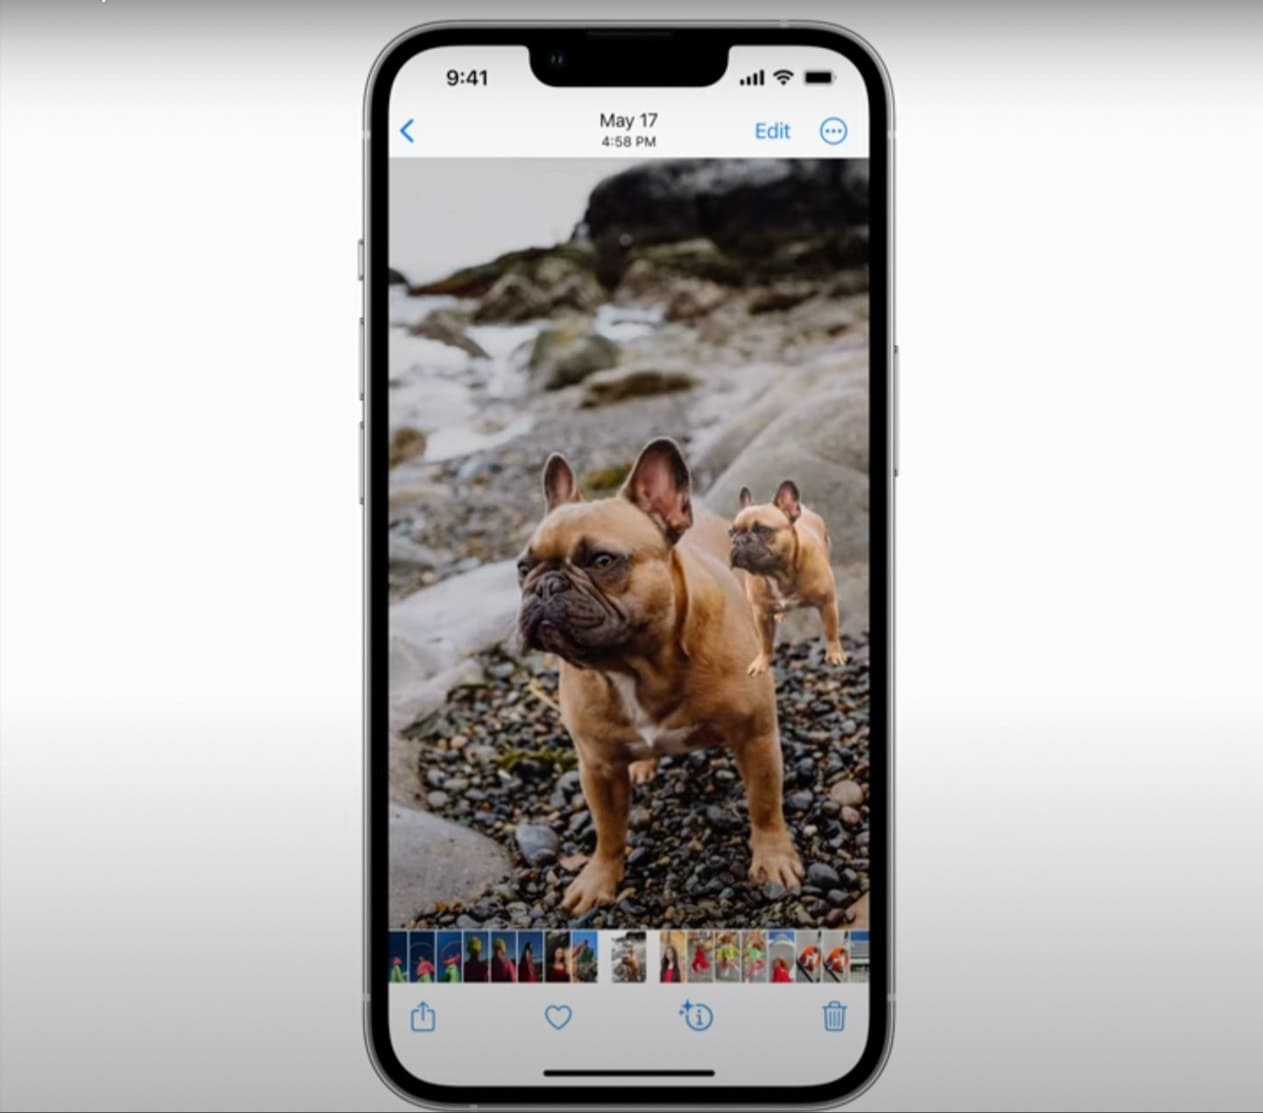 Bạn muốn sử dụng tính năng tách nền ảnh trên iOS 16? Tính năng này giúp bạn tách nền ảnh một cách dễ dàng và chính xác, giúp giảm bớt thời gian chỉnh sửa ảnh và giúp cho hình ảnh của bạn trở nên chất lượng và chuyên nghiệp hơn. Hãy sử dụng tính năng này để nâng cao chất lượng ảnh của bạn nhé!